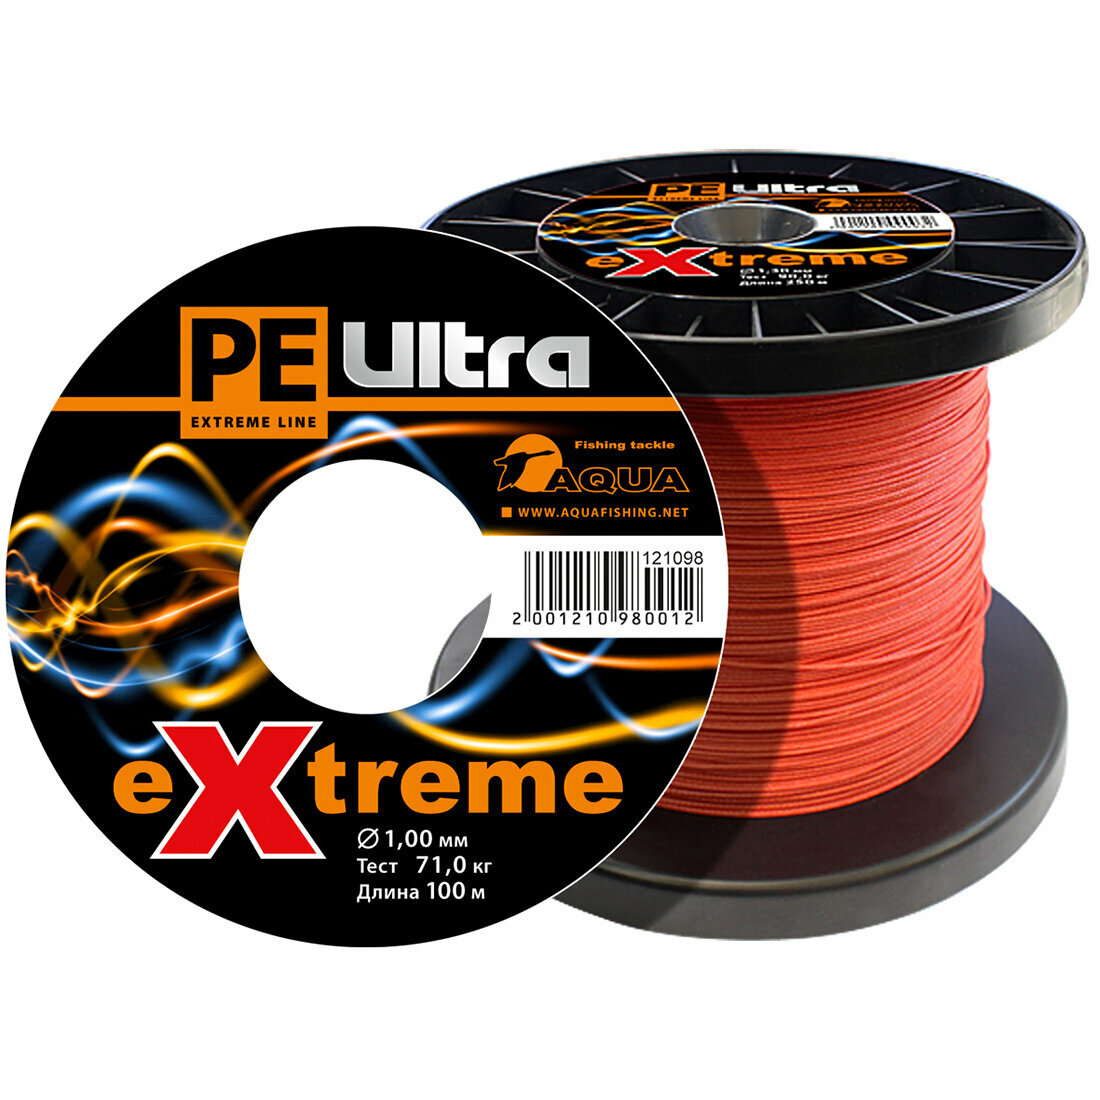 Плетеный шнур для рыбалки AQUA PE ULTRA EXTREME 100mm (цвет красный) 100m